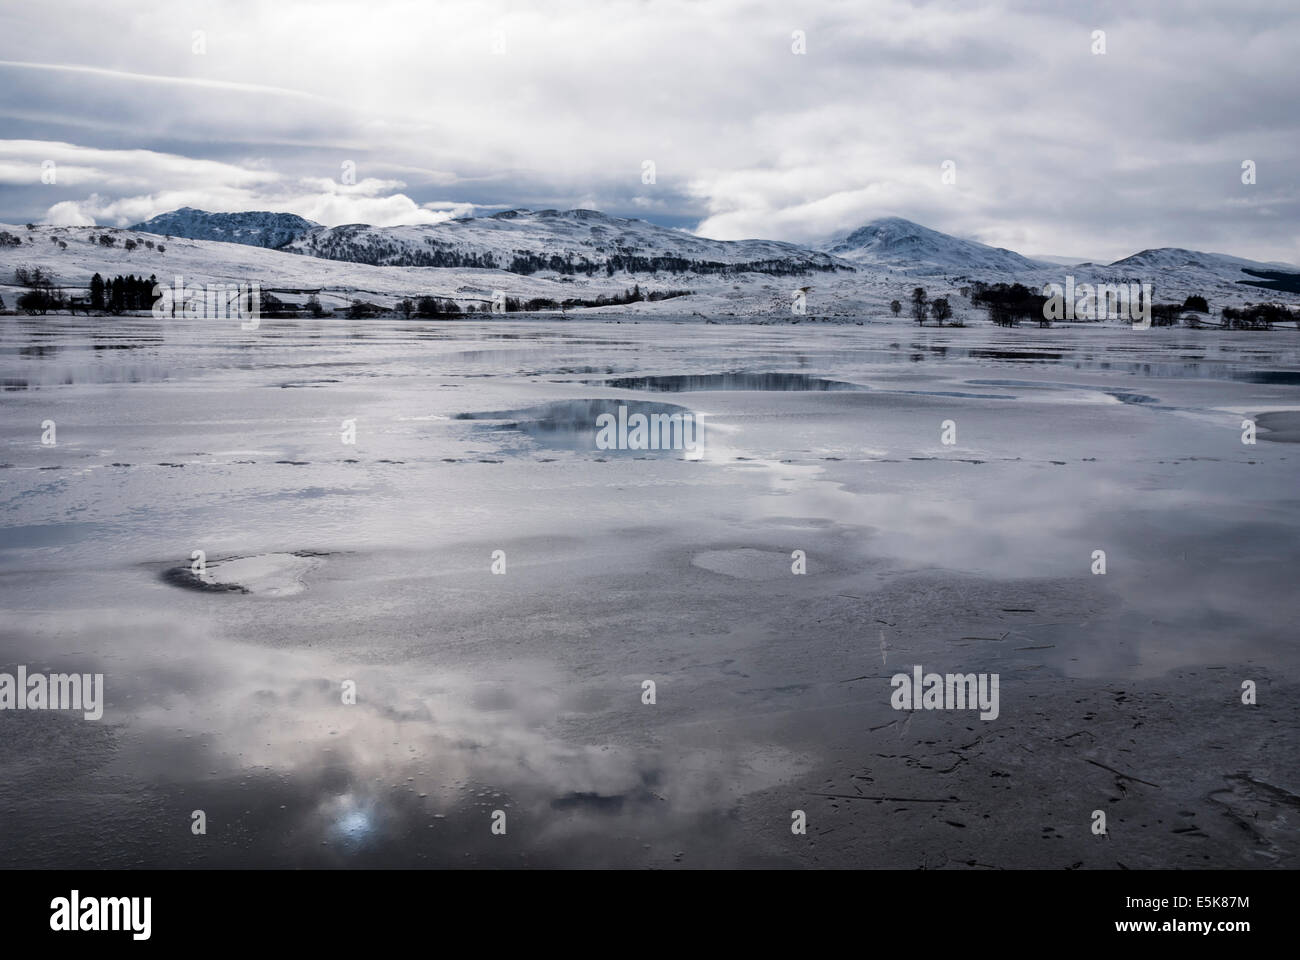 Looking across Loch Rannoch, Loch Raineach, in winter, Scotland. Stock Photo